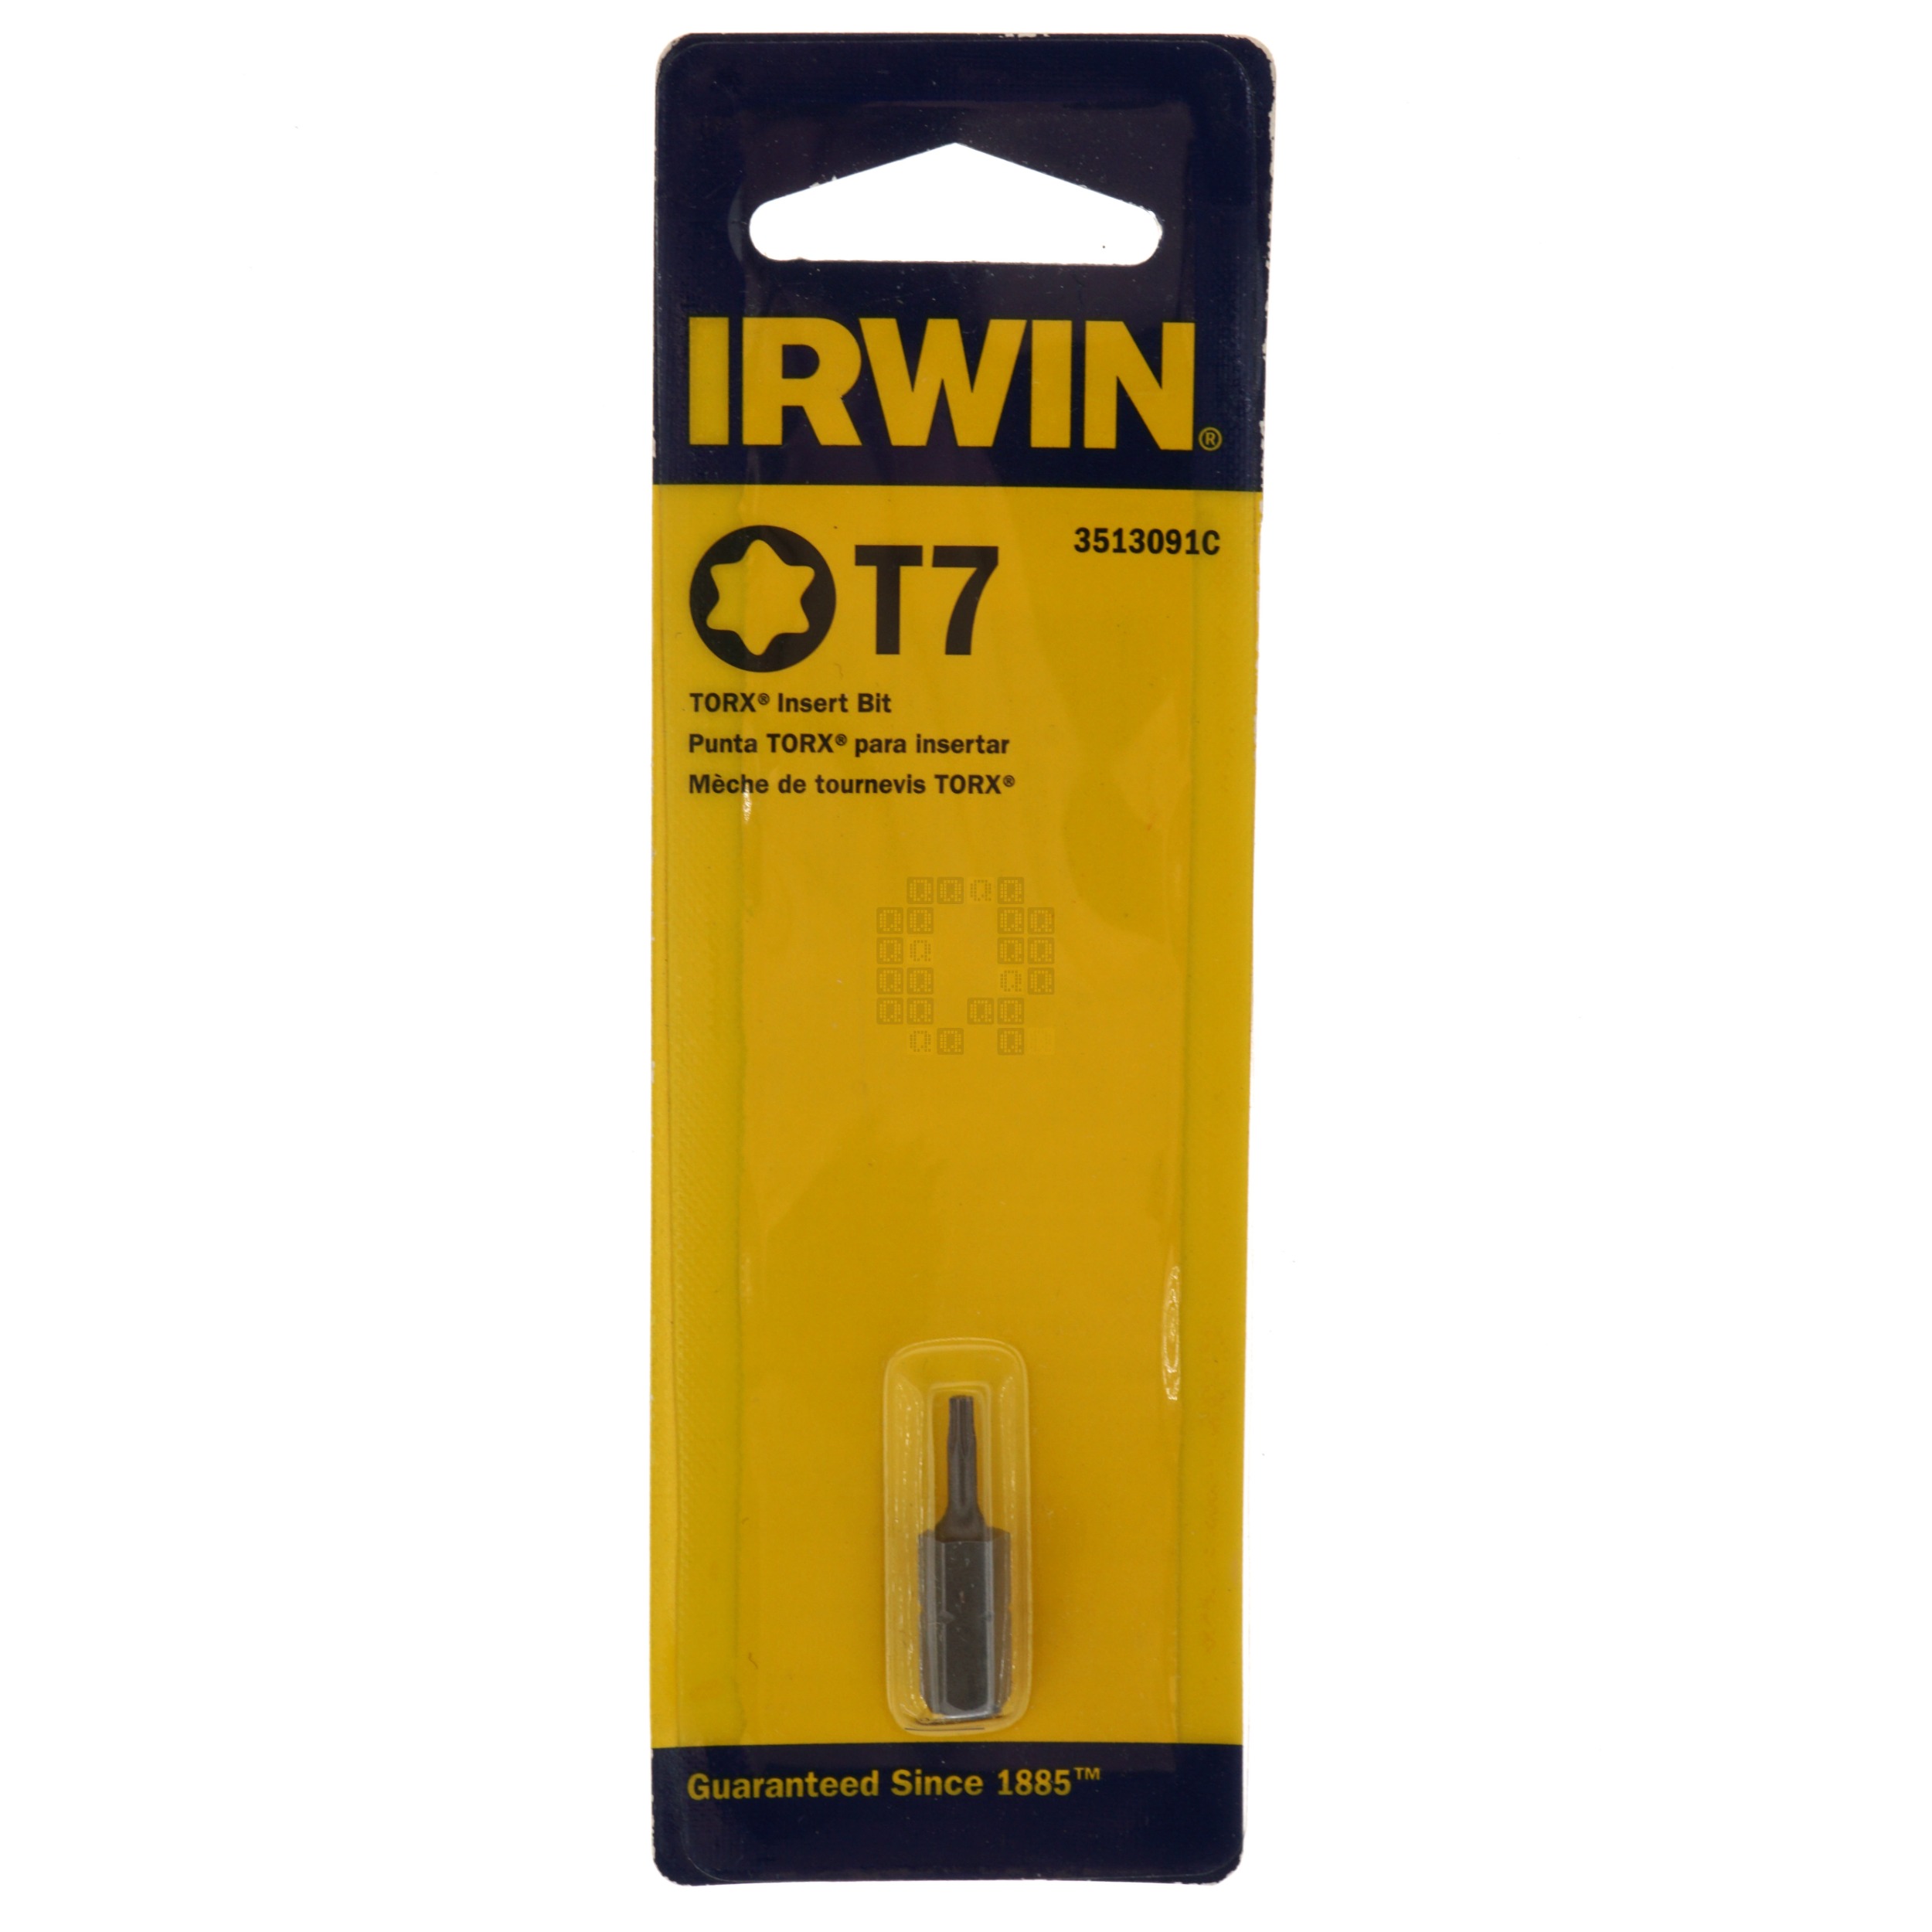 Irwin Industrial Tools 3513091C T7 TORX Insert Bit, 1"